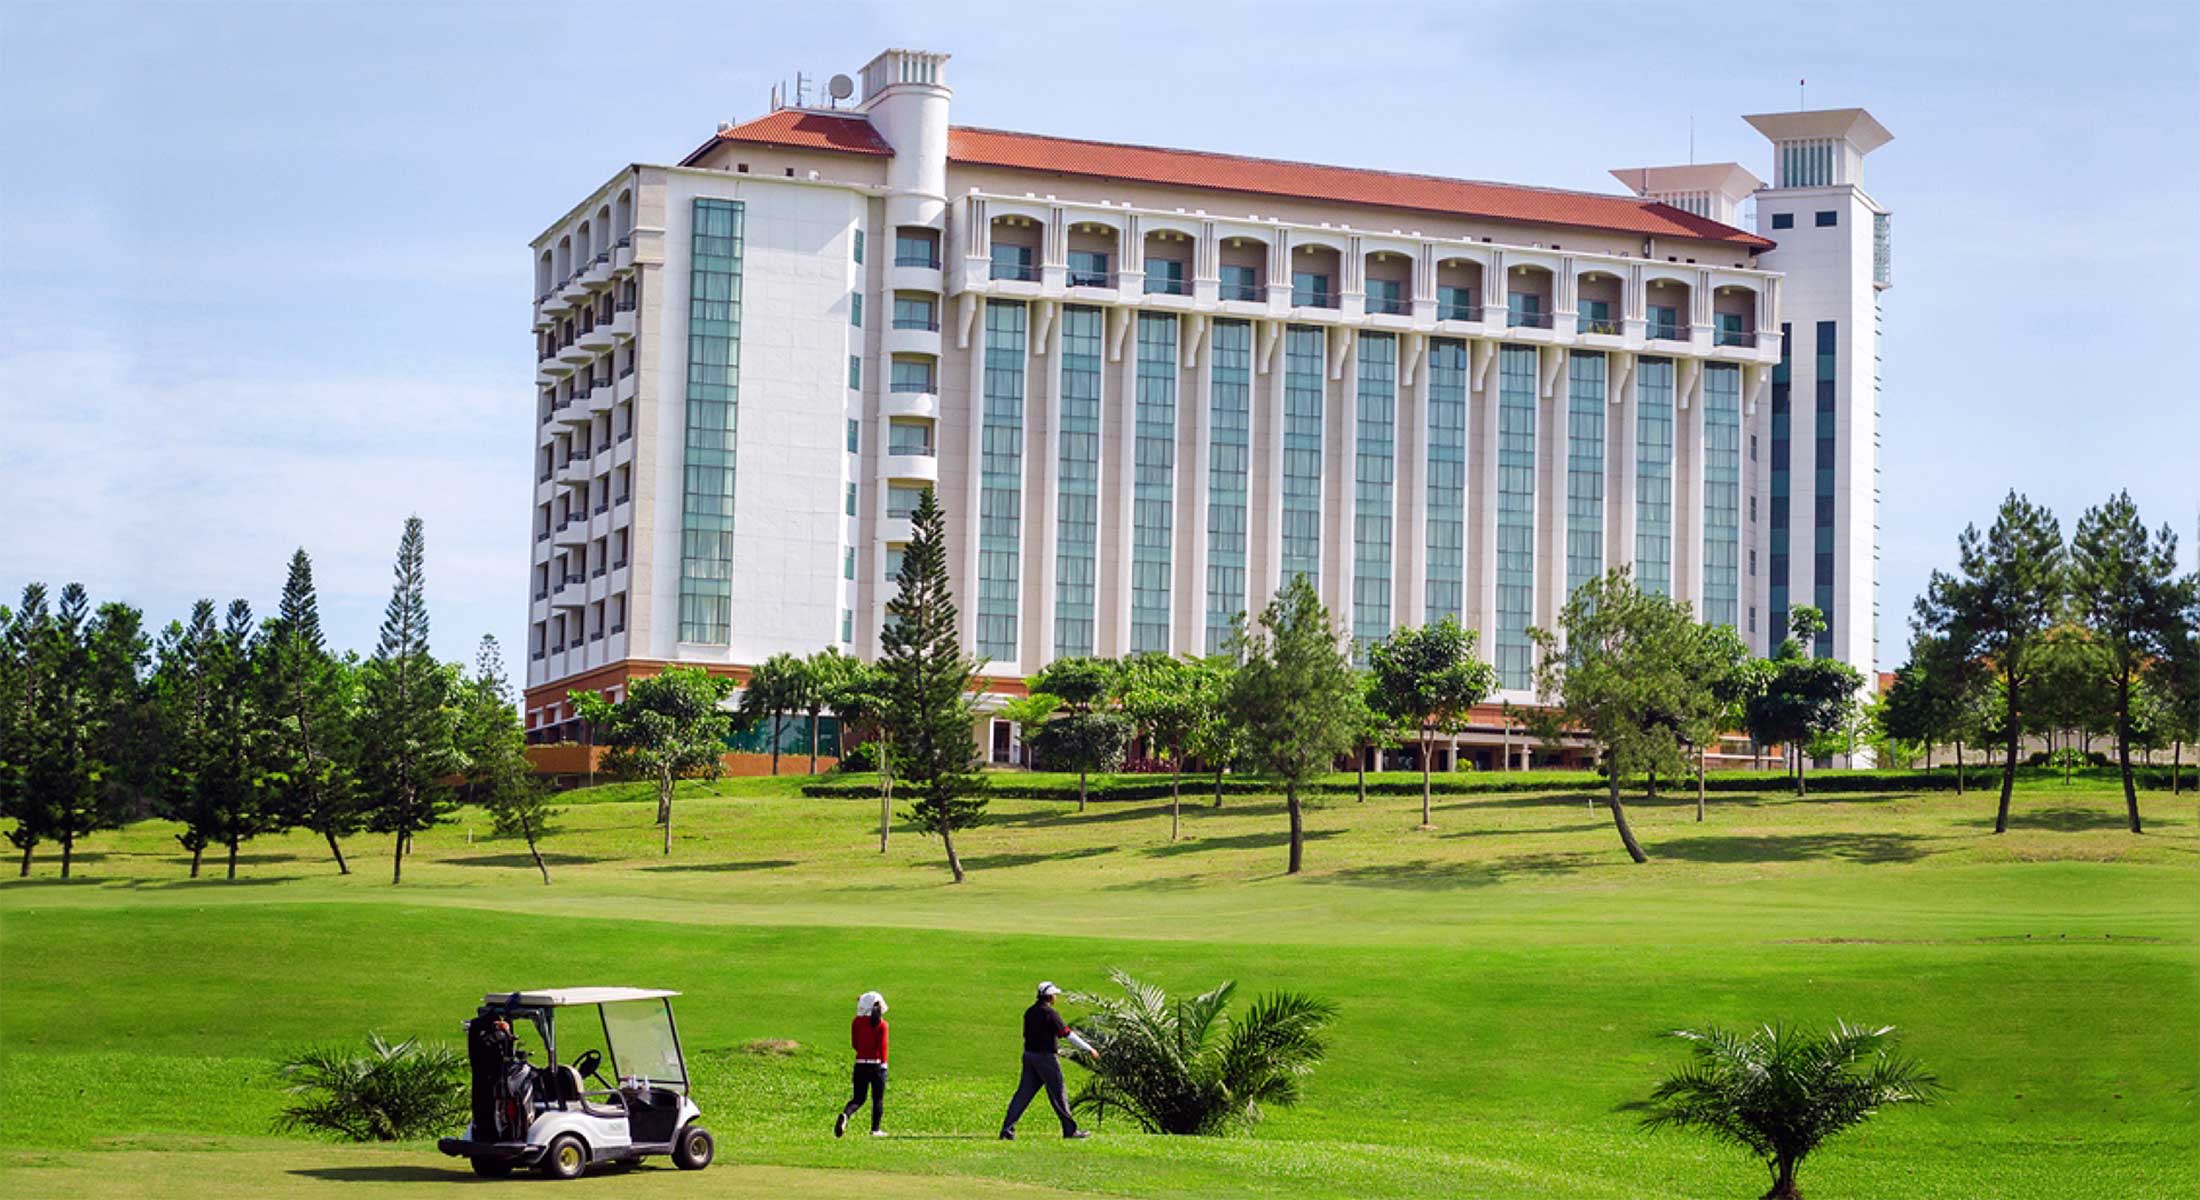 Nilai spring resort hotel